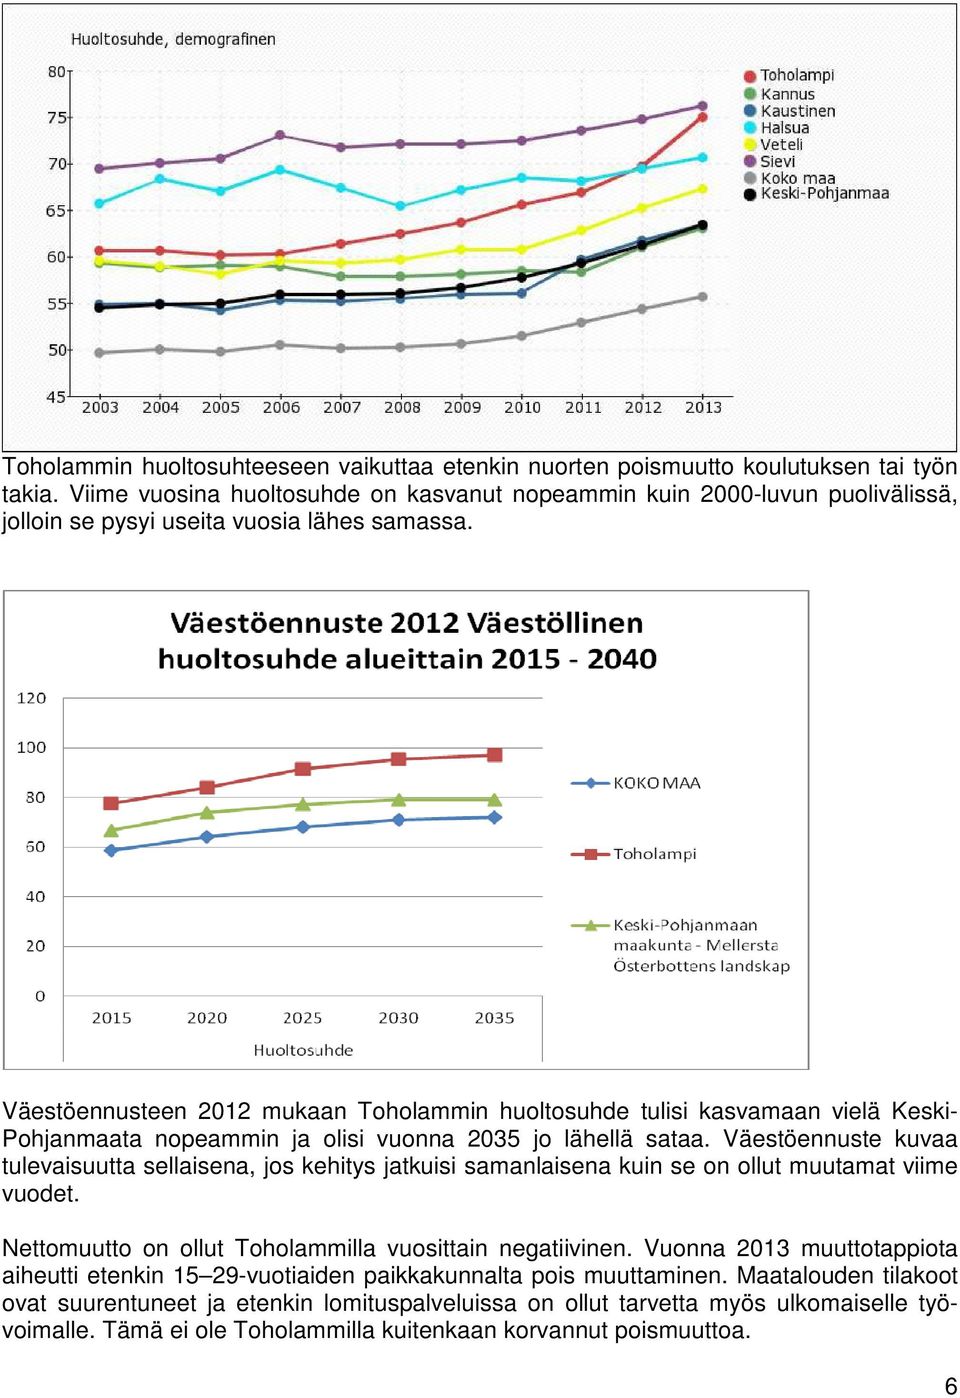 Väestöennusteen 2012 mukaan Toholammin huoltosuhde tulisi kasvamaan vielä Keski- Pohjanmaata nopeammin ja olisi vuonna 2035 jo lähellä sataa.